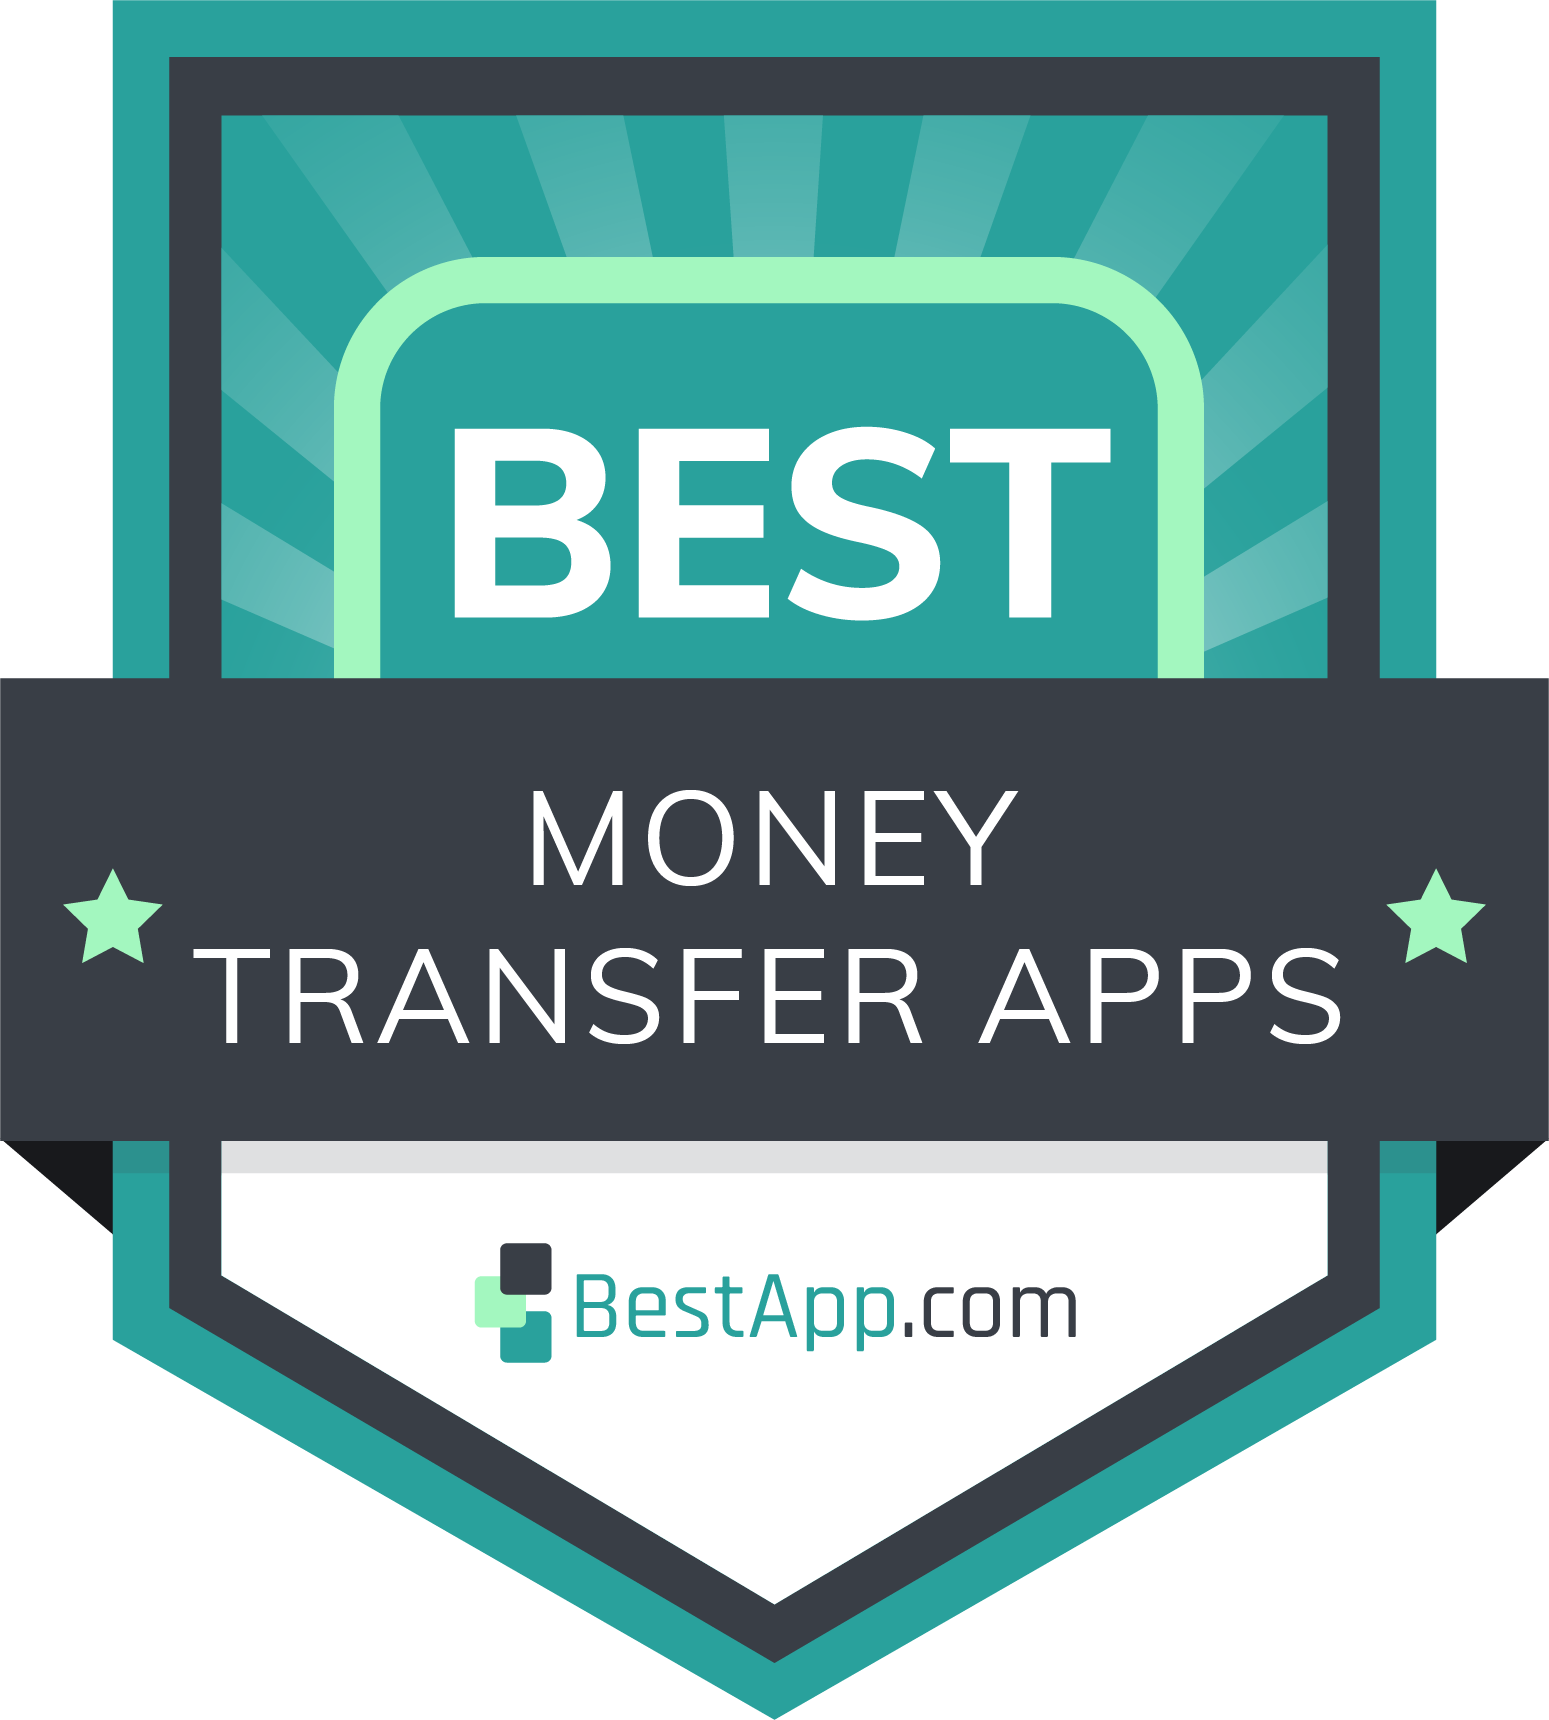 Best Money Transfer Apps Badge